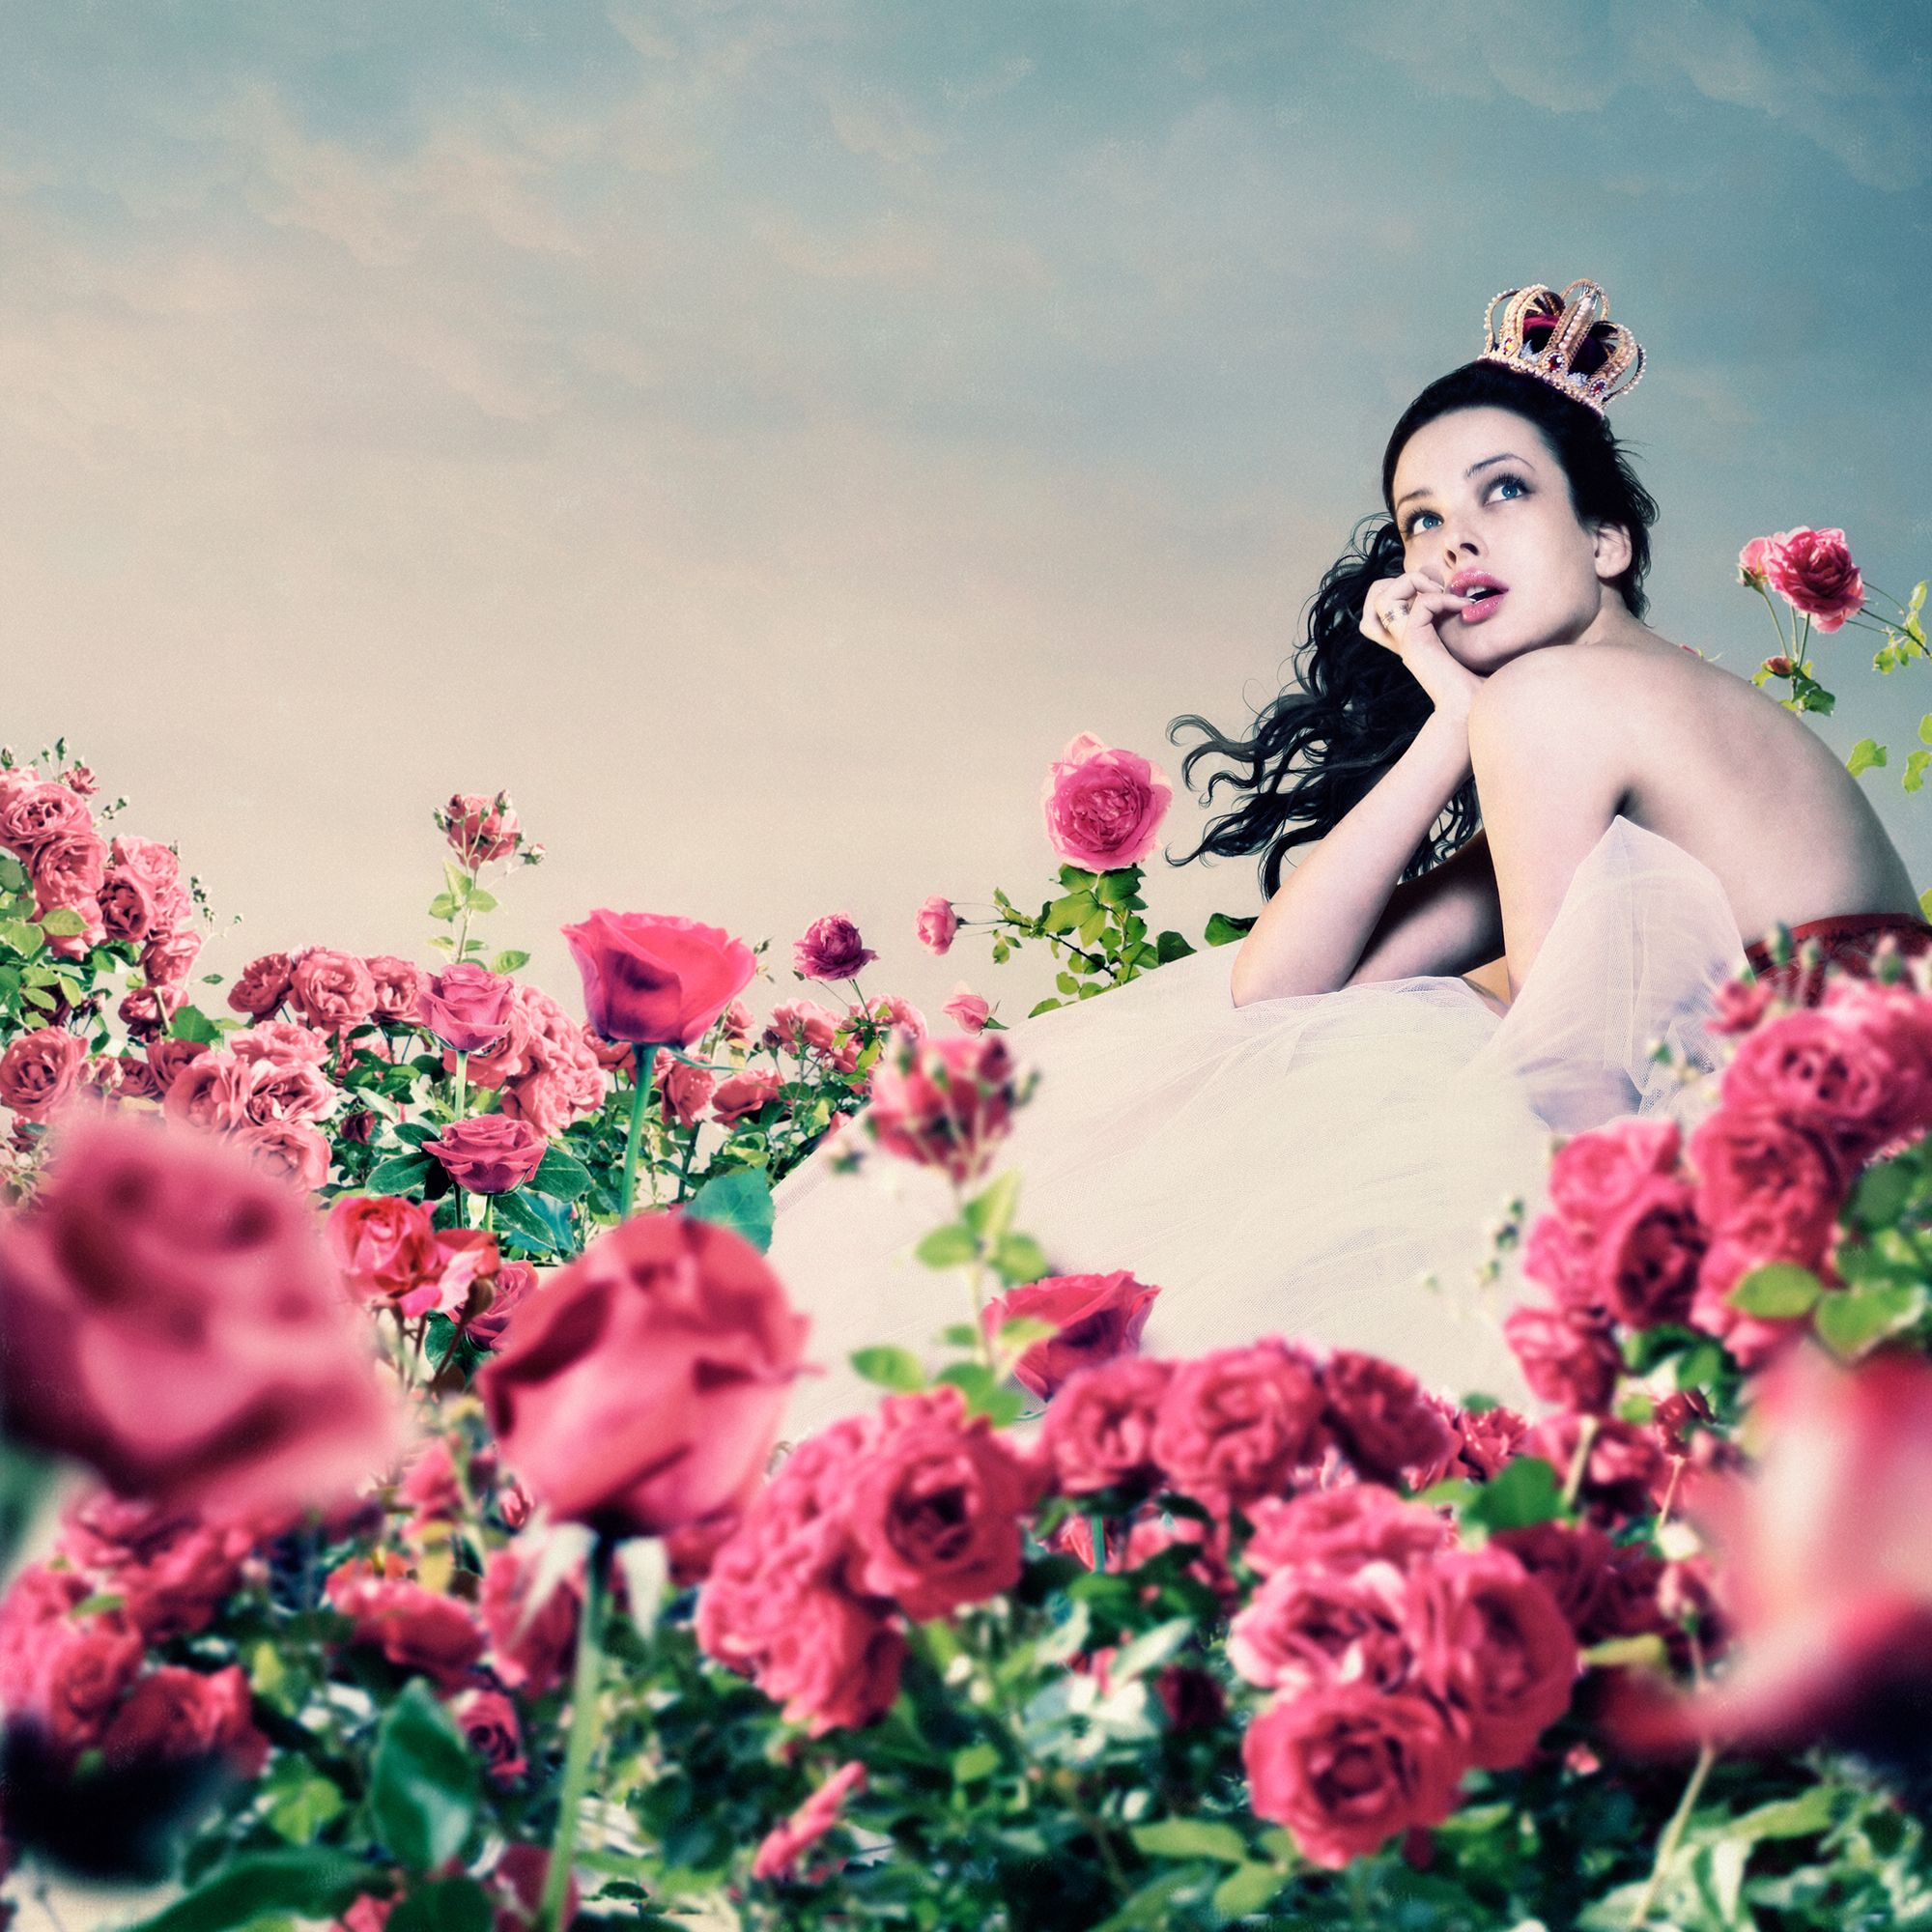 Schwarzhaarige Frau in weißem Kleid, die auf einer Wiese mit rosa Blumen sitzt und in den Himmel schaut